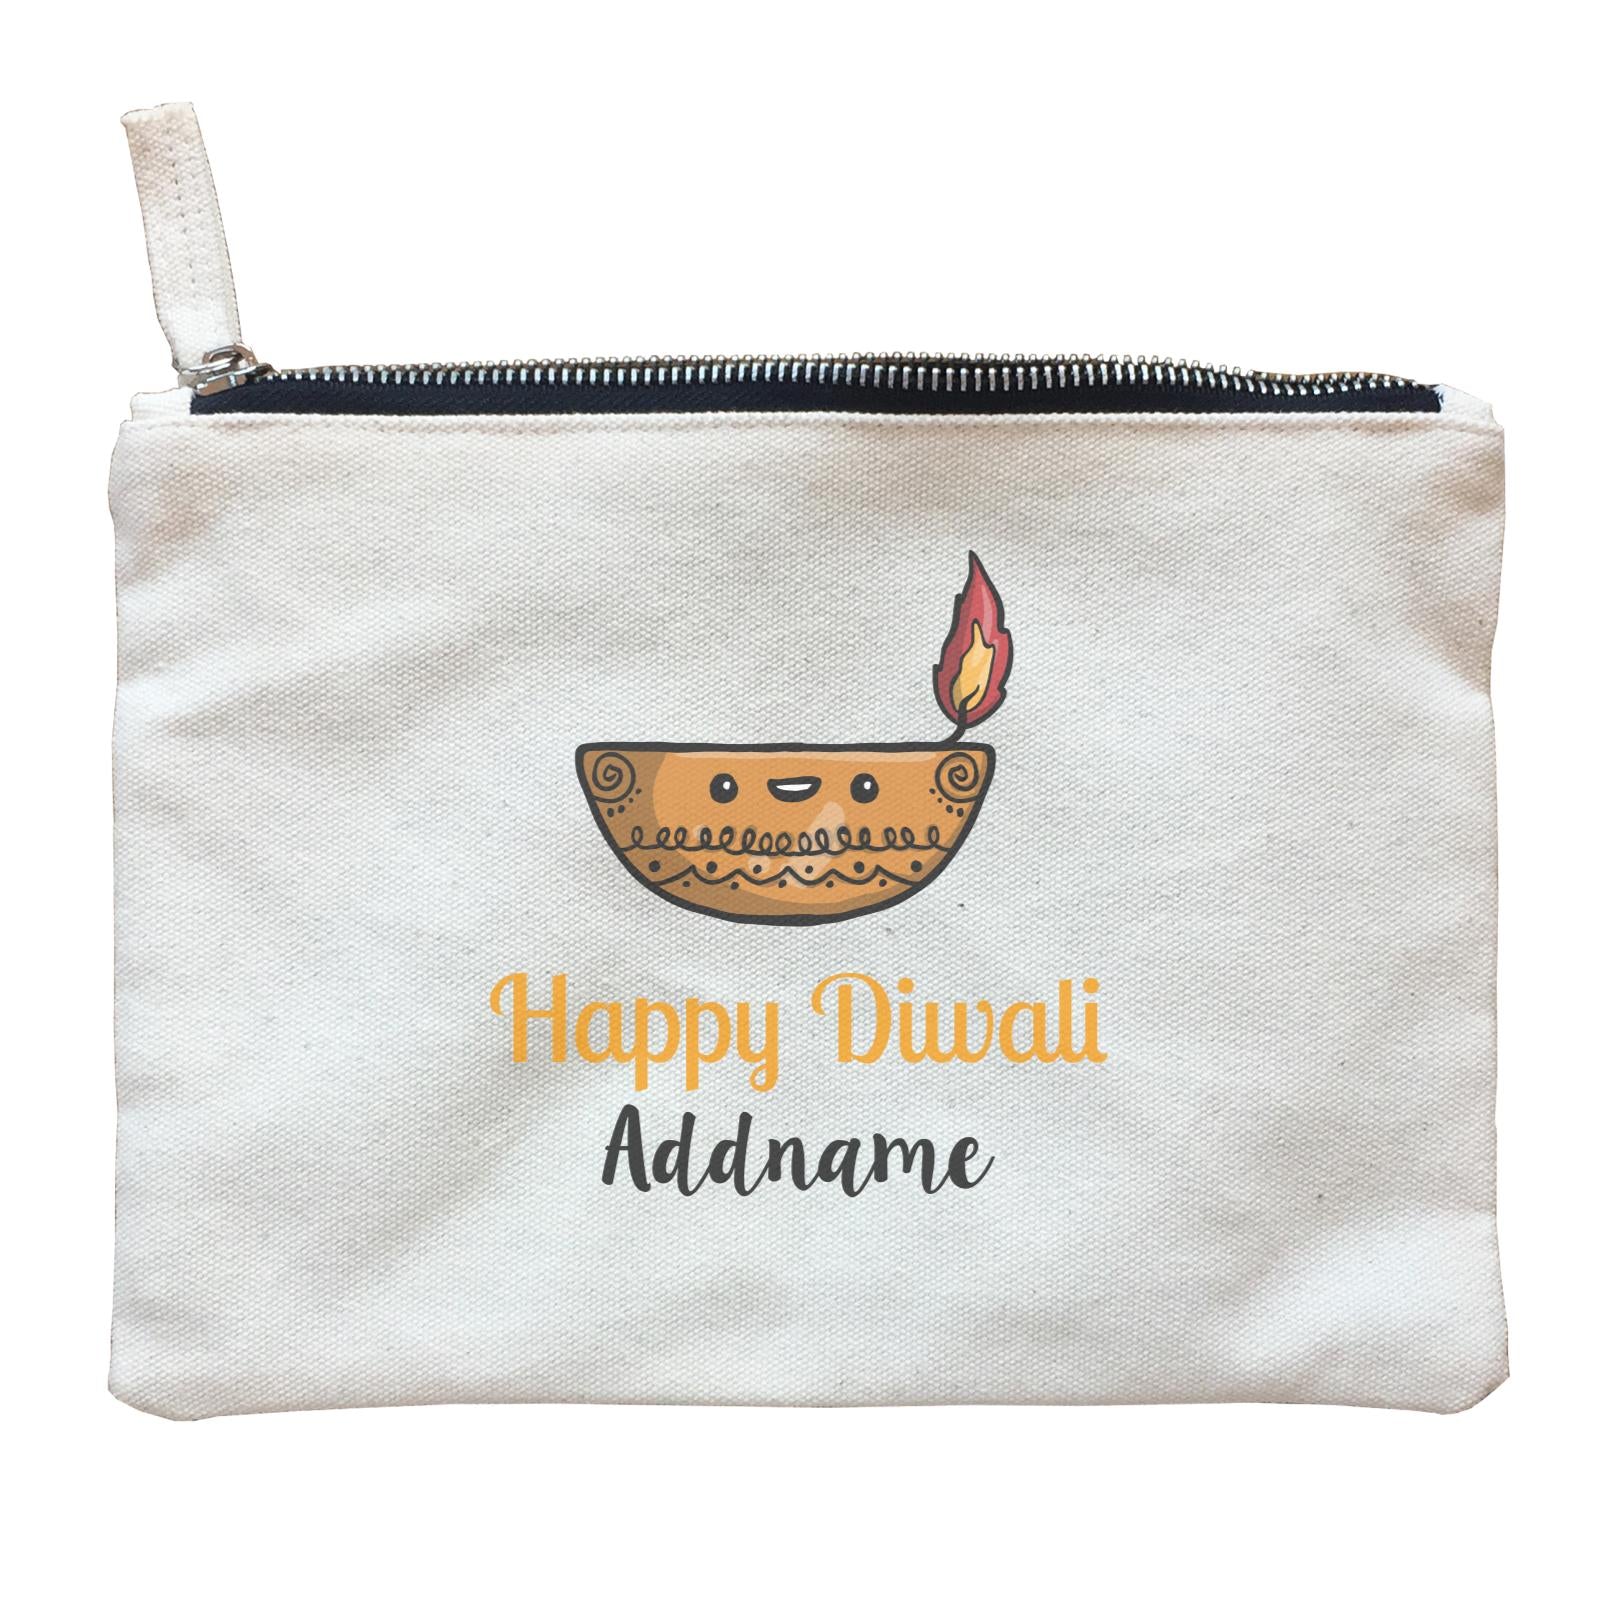 Cute Round Diyas Happy Diwali Addname Zipper Pouch